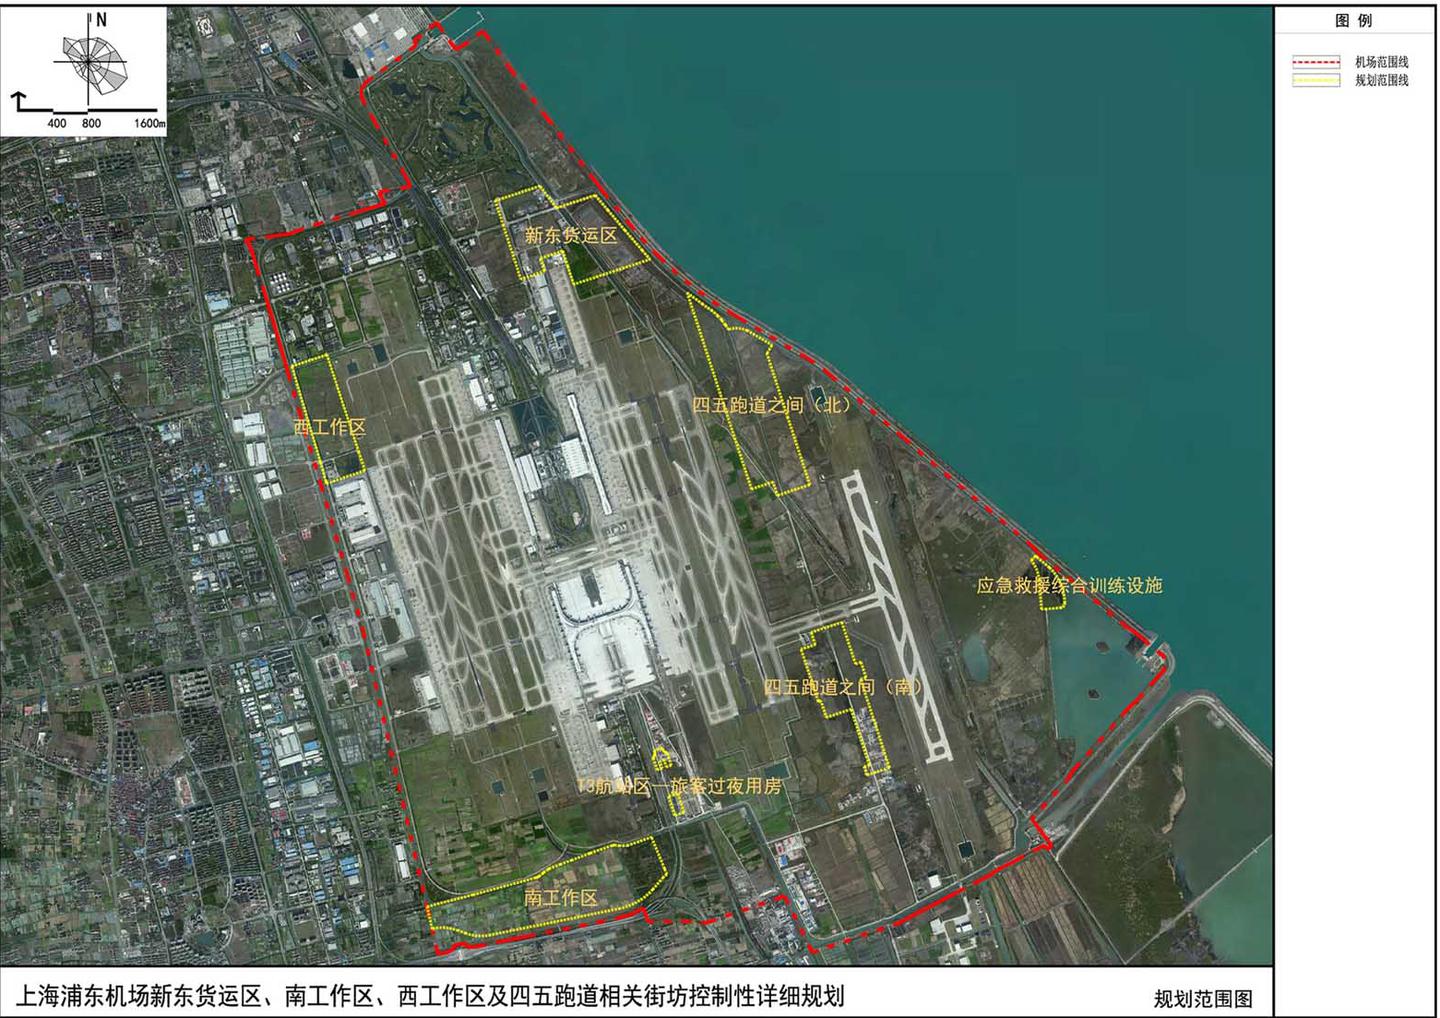 上海浦东机场t3芳容初露 全场货运设施布局呈包围状